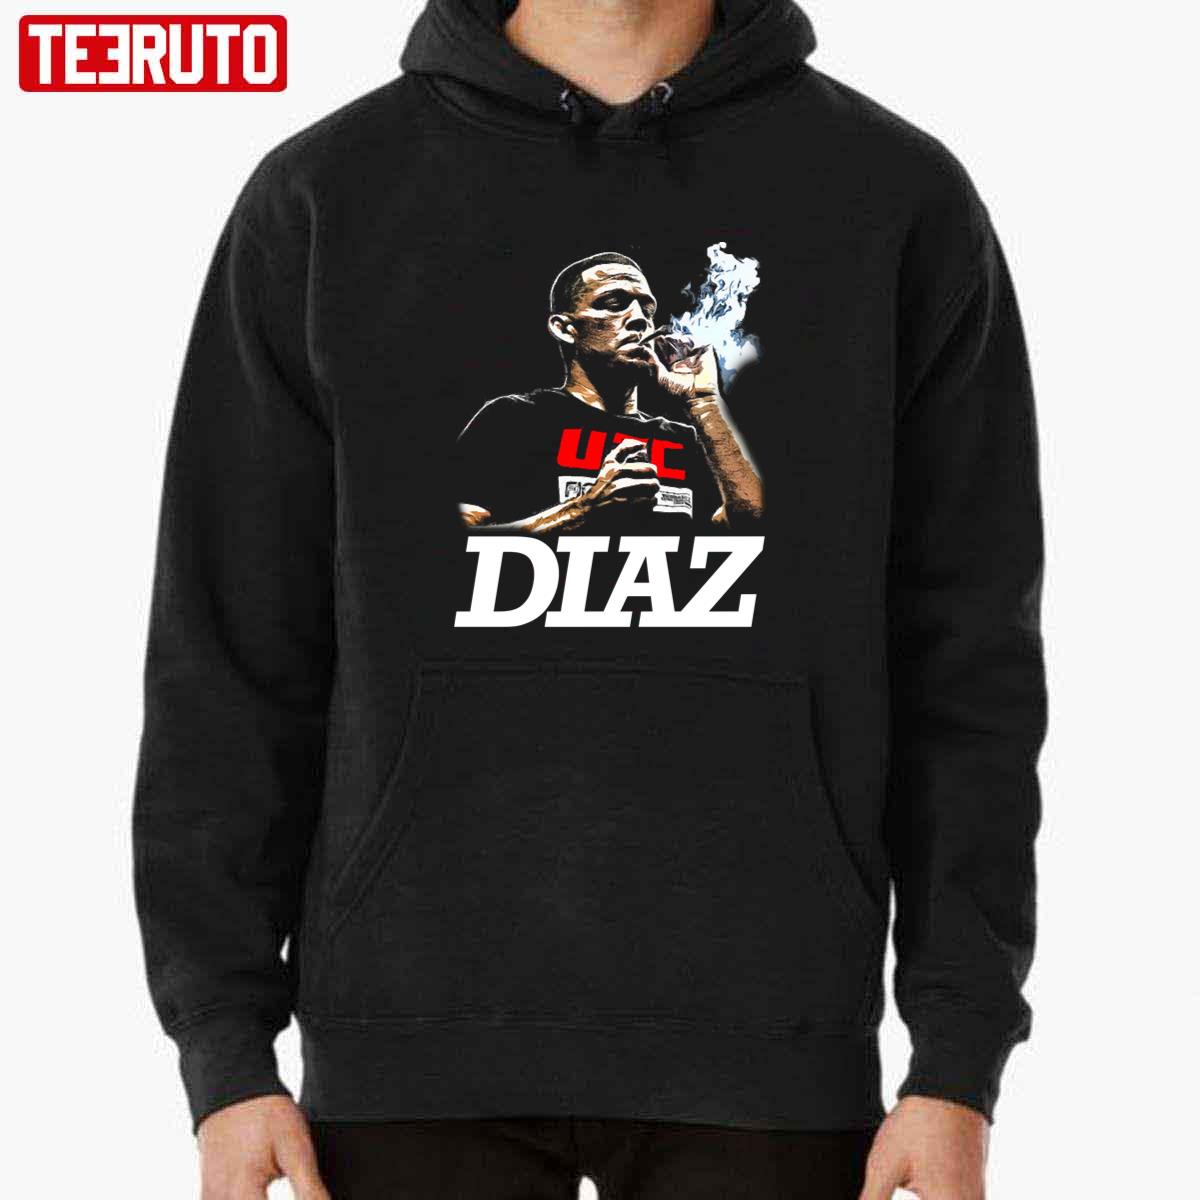 Diaz Nate Diaz UFC Graphic Unisex T-shirt